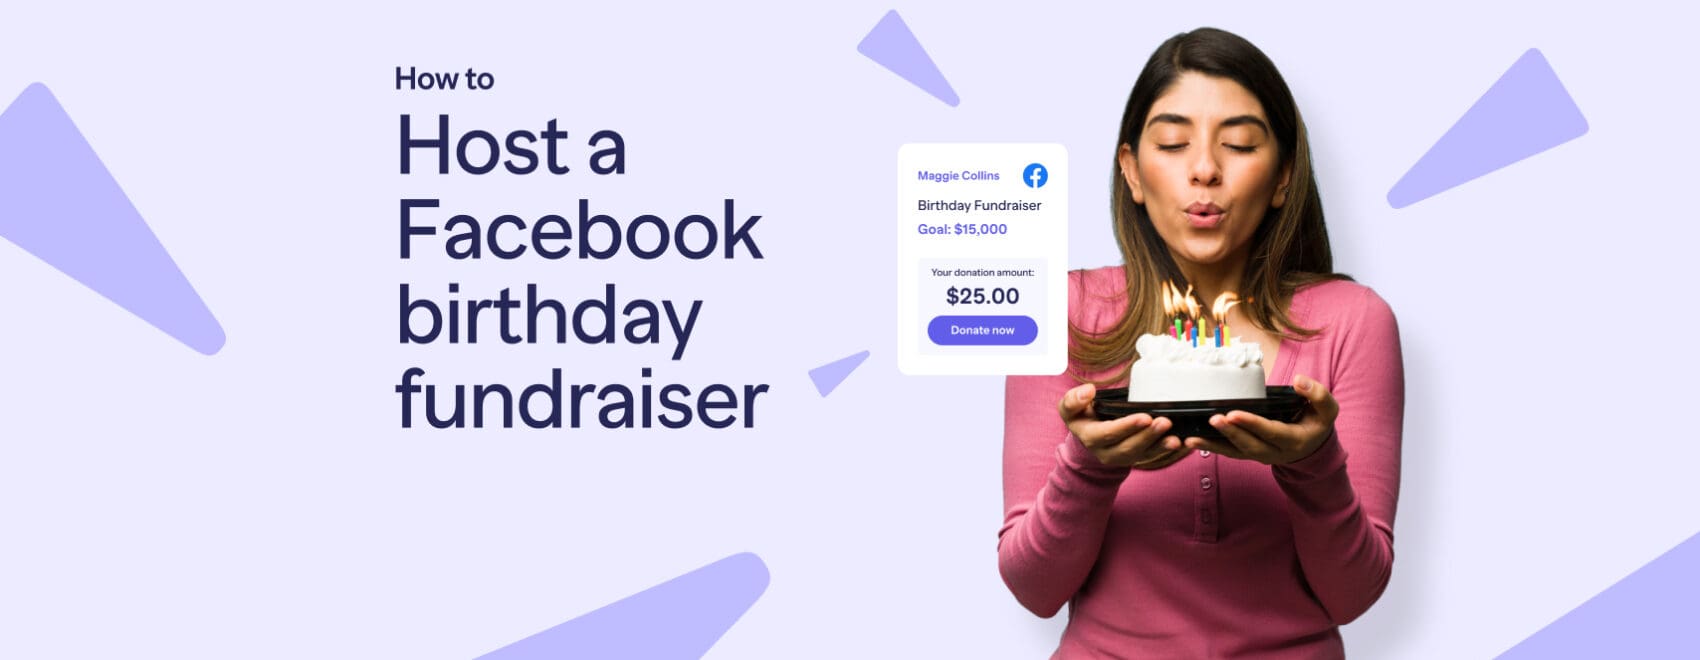 Host a Facebook birthday fundraiser